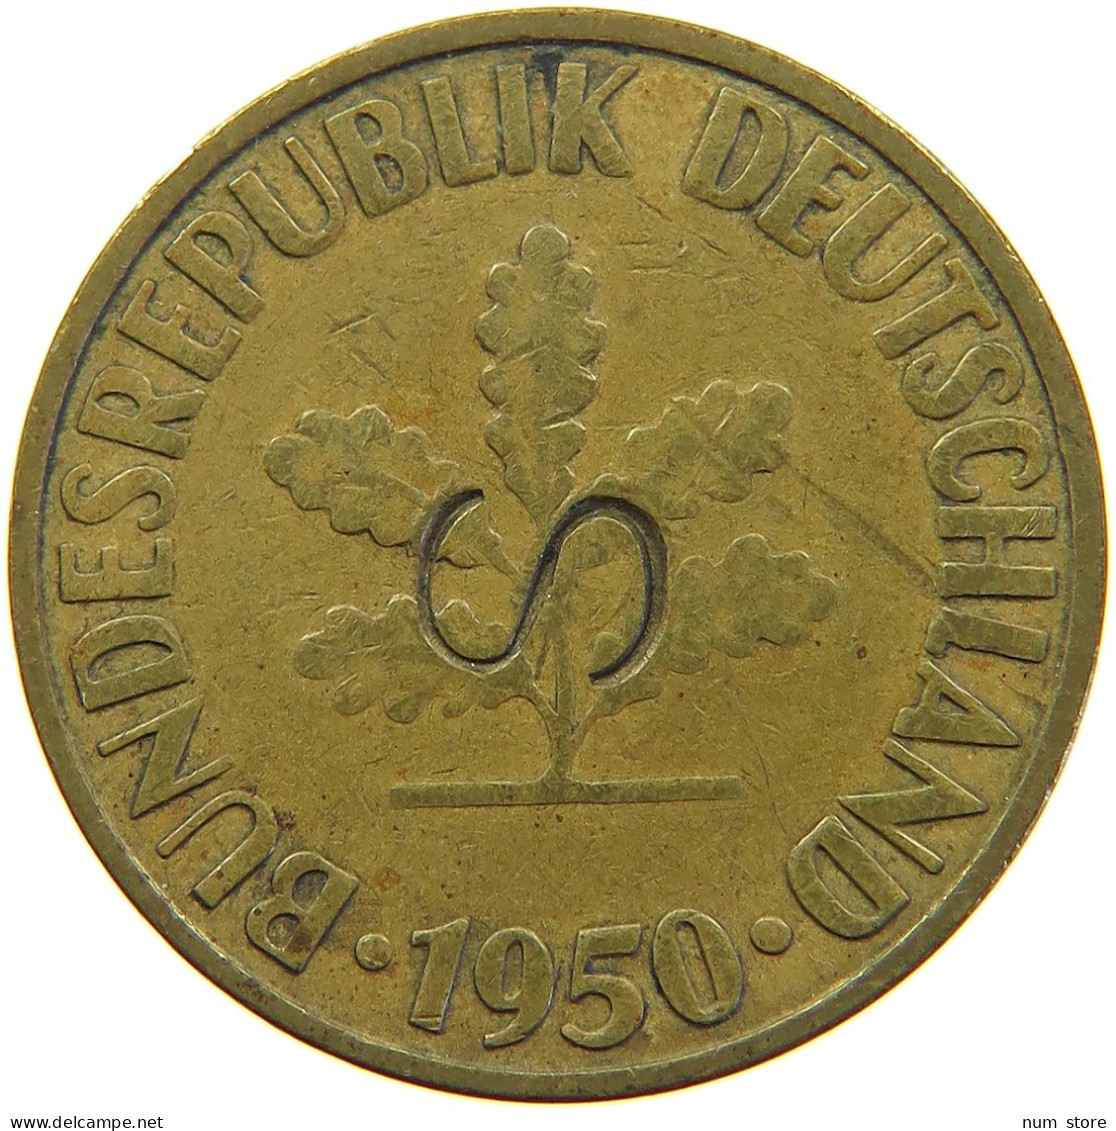 WEIMARER REPUBLIK 10 PFENNIG 1950 G GEGENSTEMPEL S #s024 0247 - 10 Rentenpfennig & 10 Reichspfennig